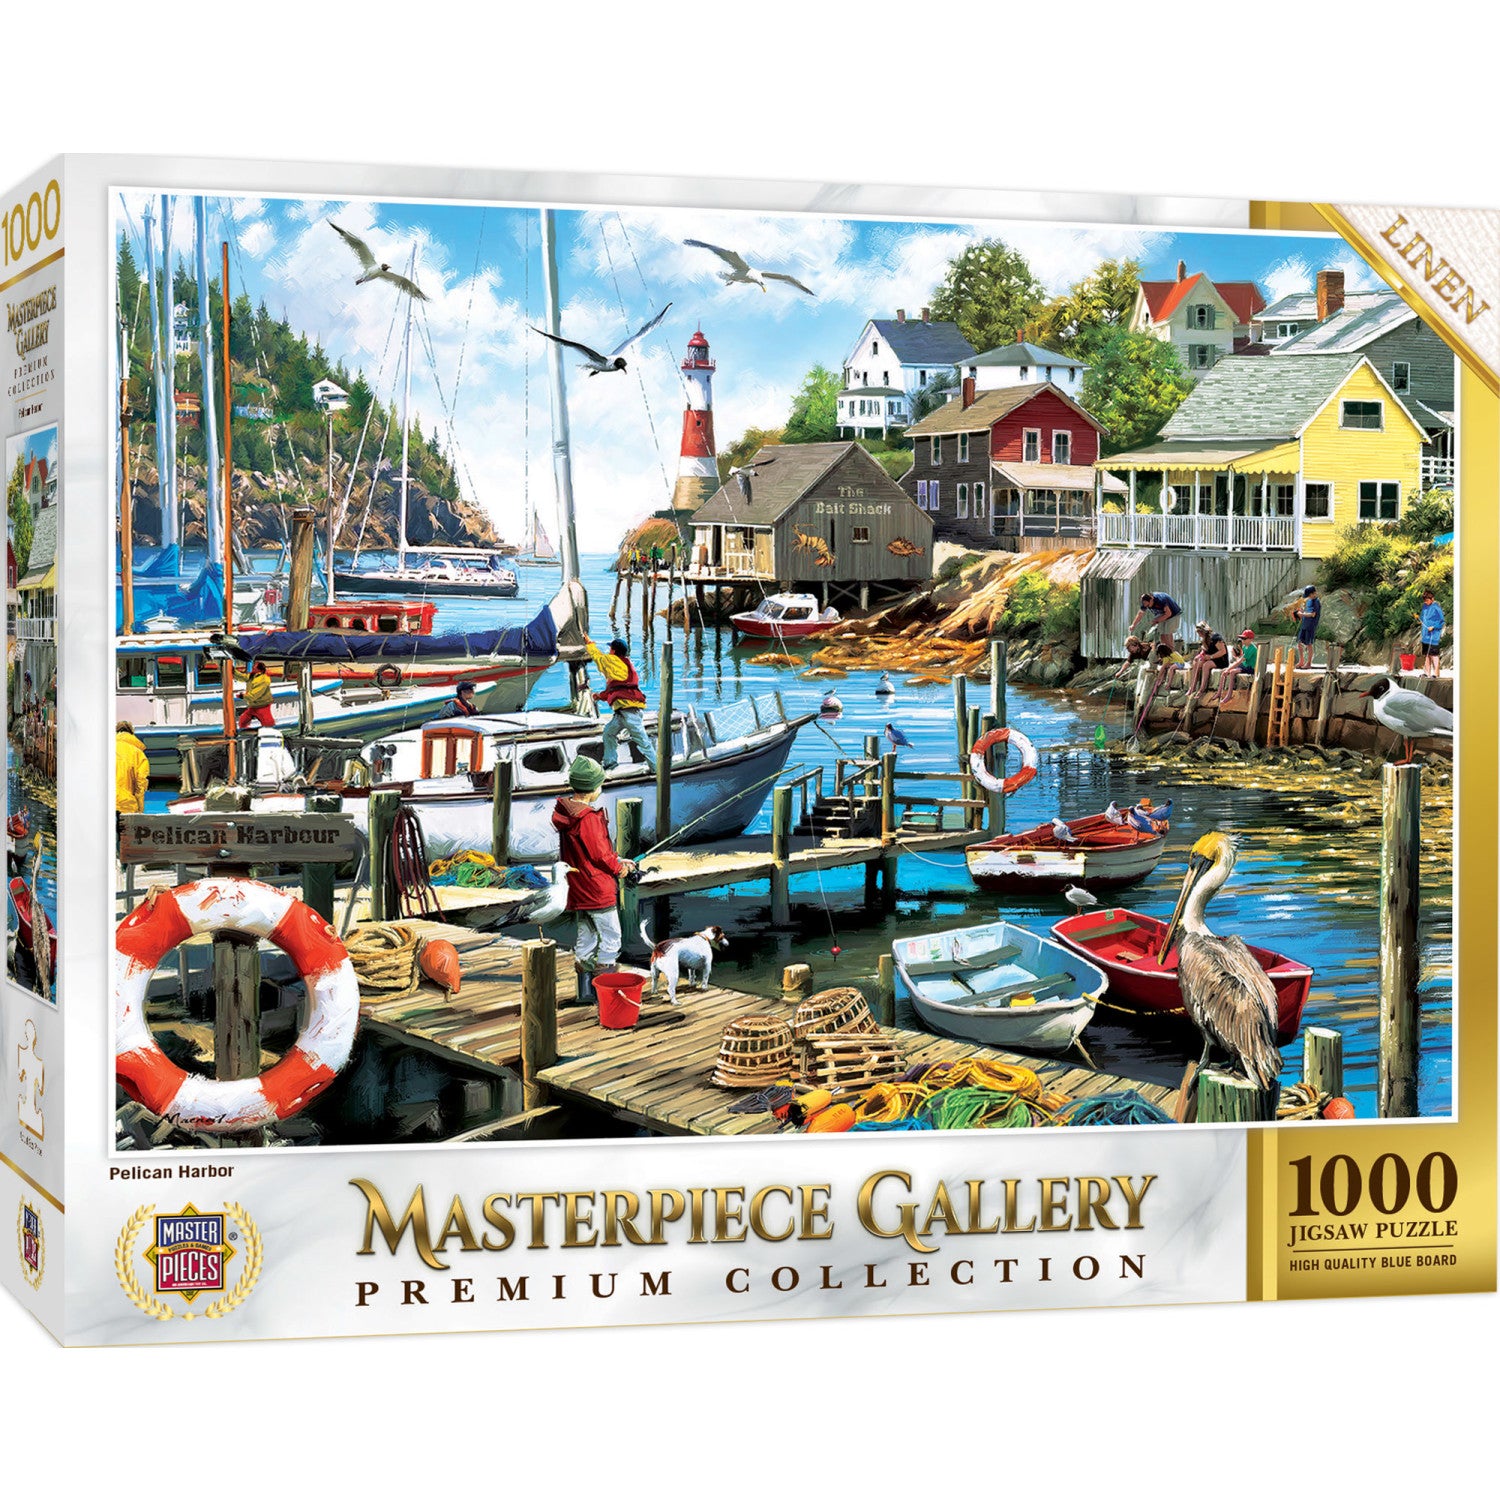 Masterpiece Gallery - Pelican Harbor 1000 Piece Puzzle